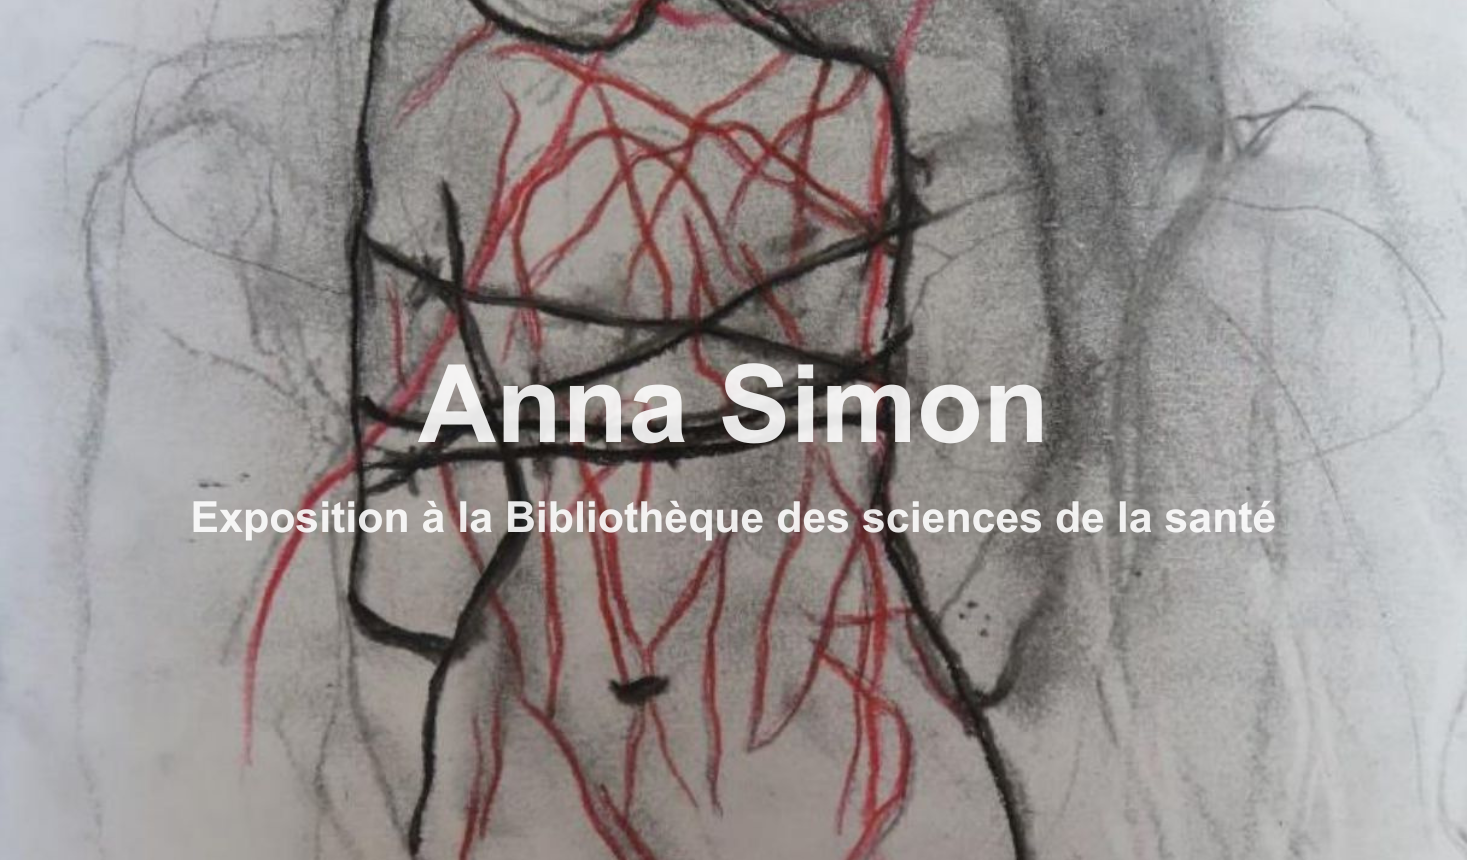 Anna Simon